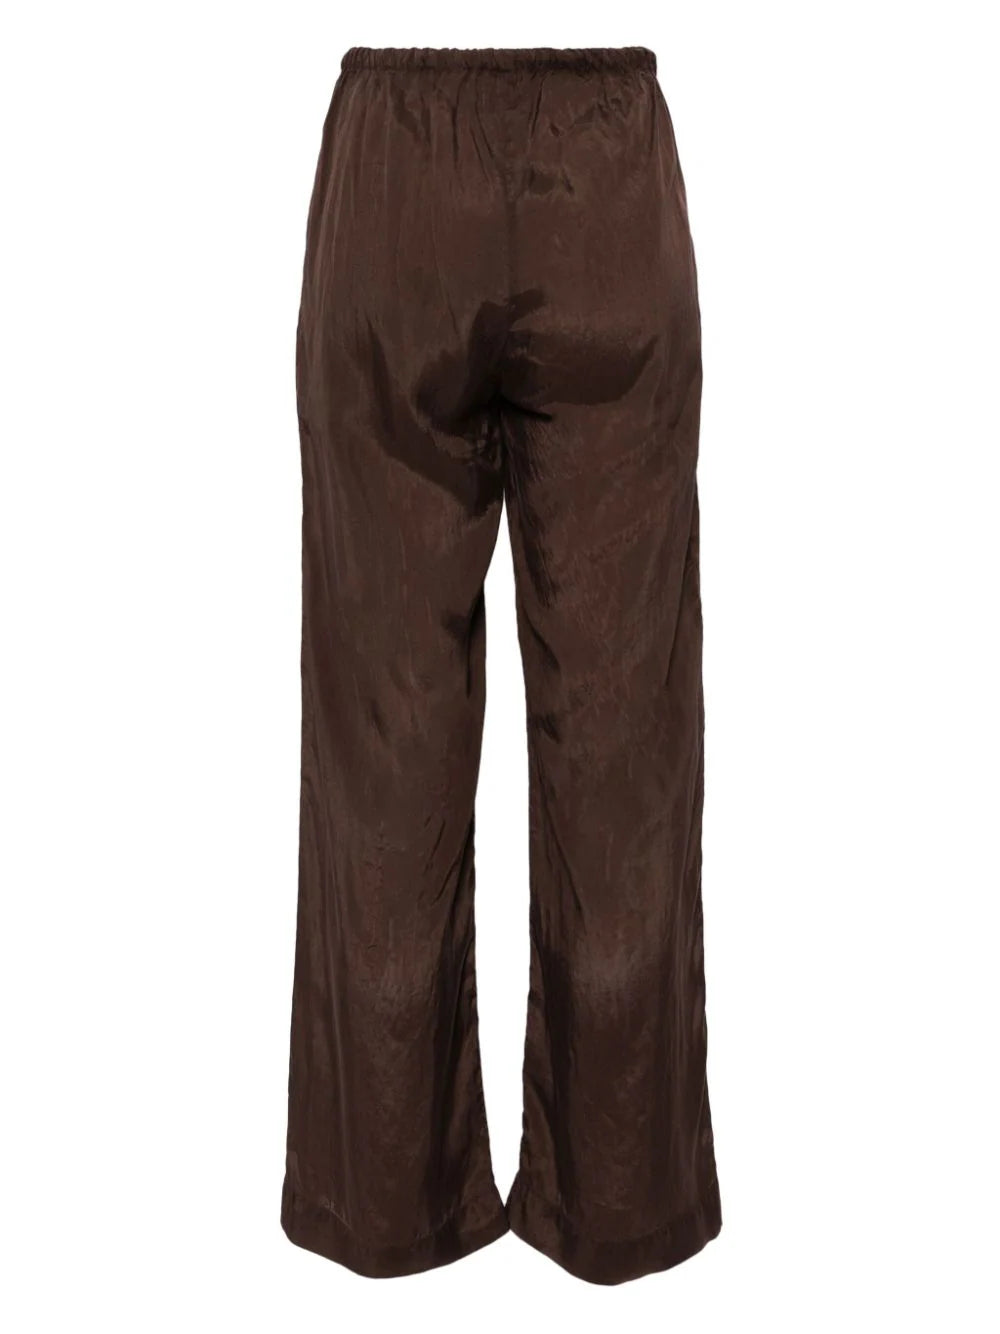 Sea Brown Pants